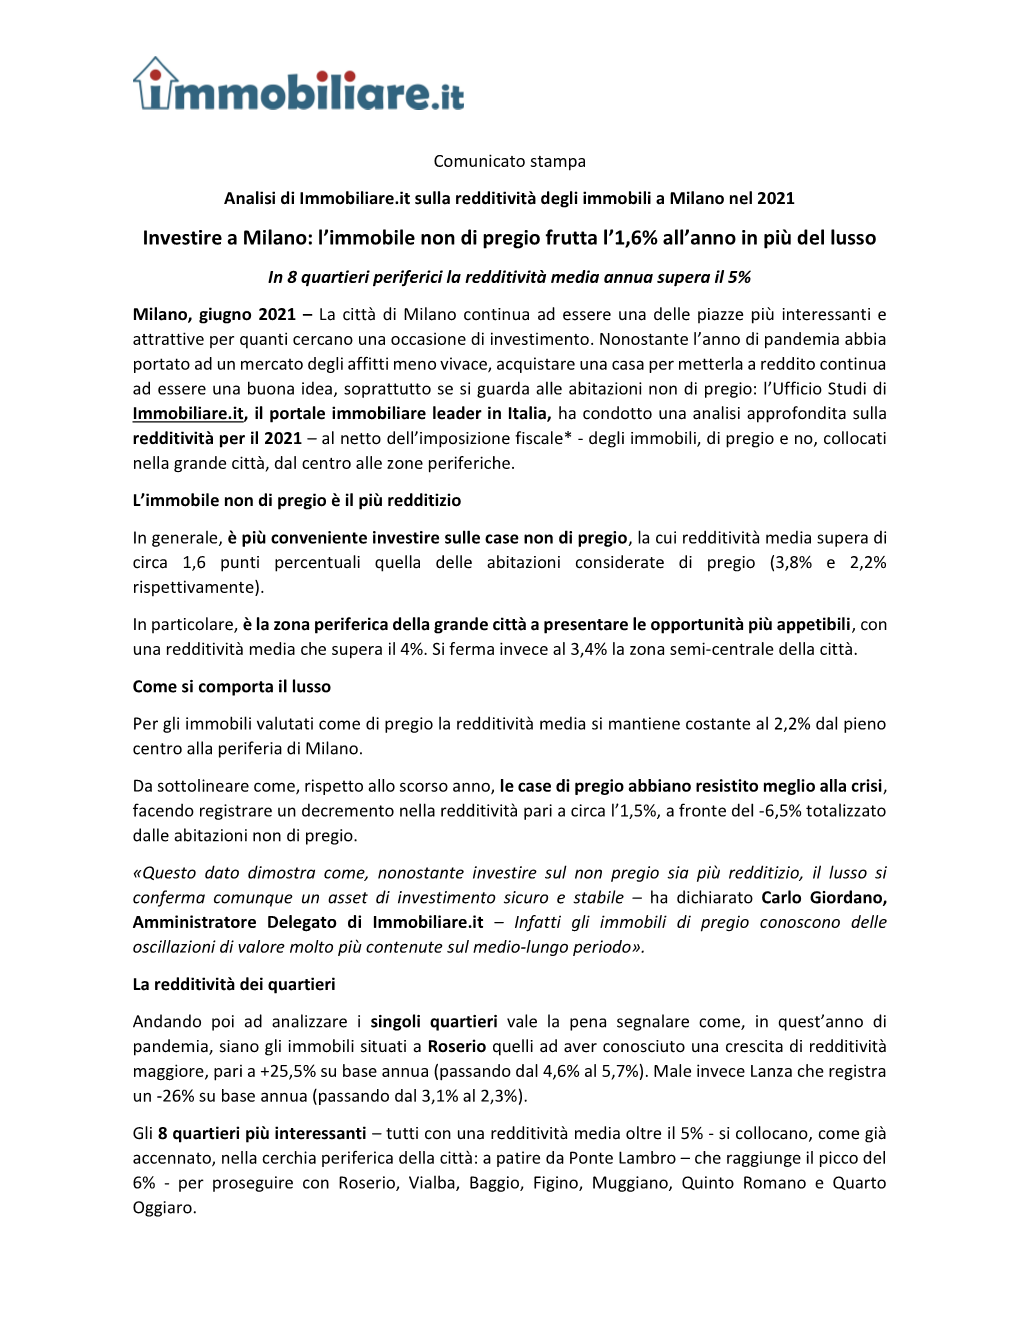 Investire a Milano: L’Immobile Non Di Pregio Frutta L’1,6% All’Anno in Più Del Lusso